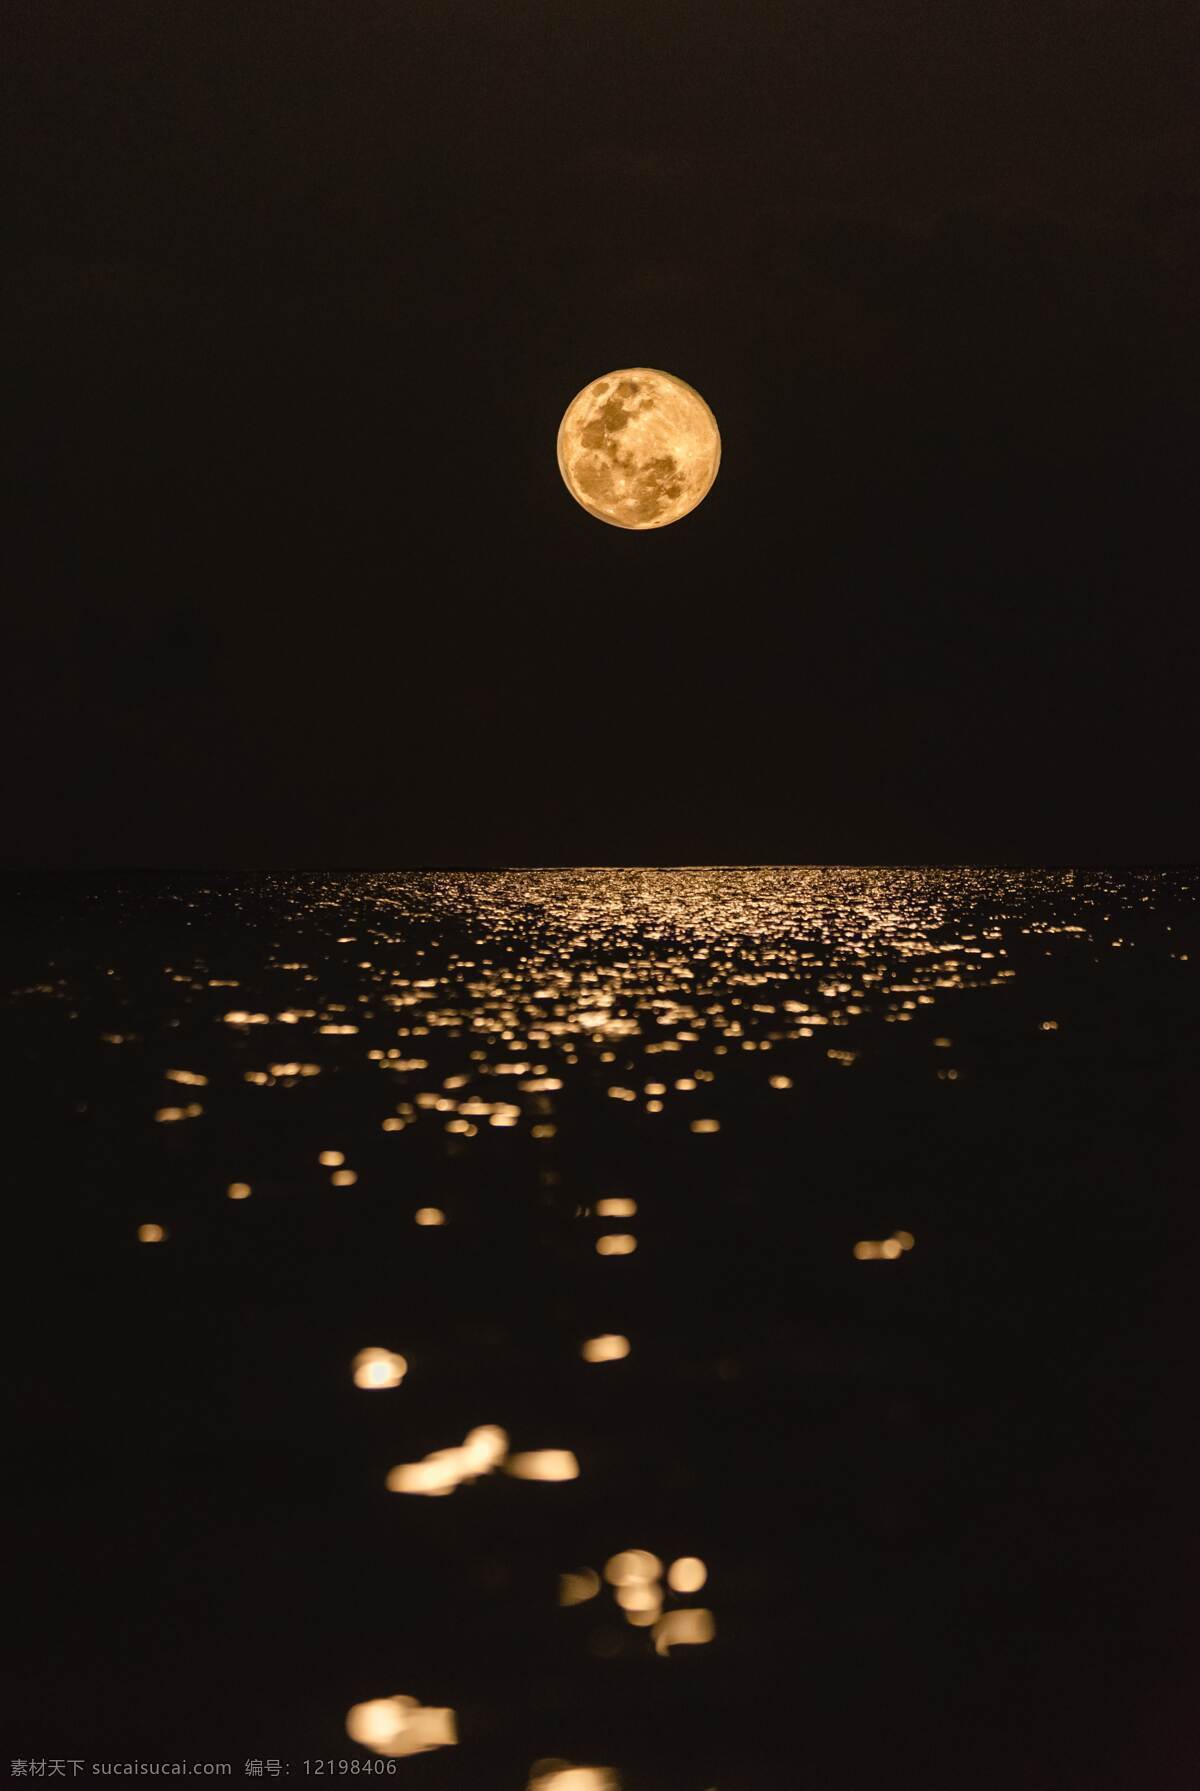 月食 月球 天文 天空 星星 月亮 过程 月偏食 月全食 弯月 风景 自然景观 自然风景